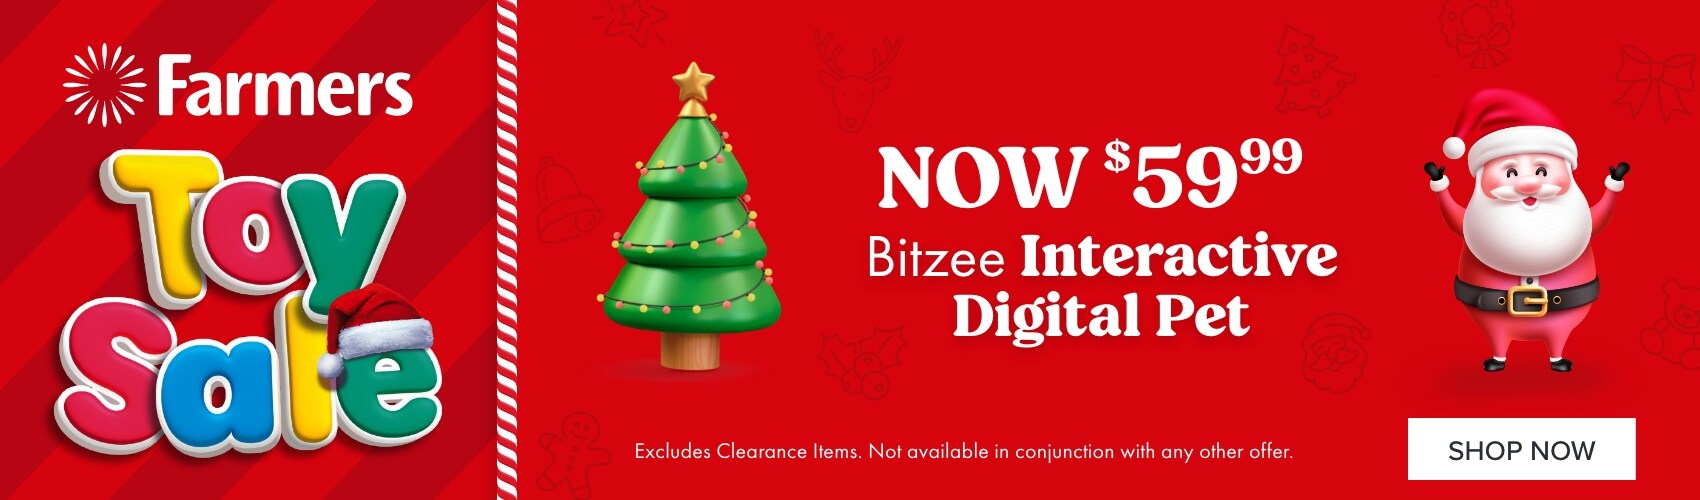 NOW $59.99 Bitzee Interactive Digital Pet